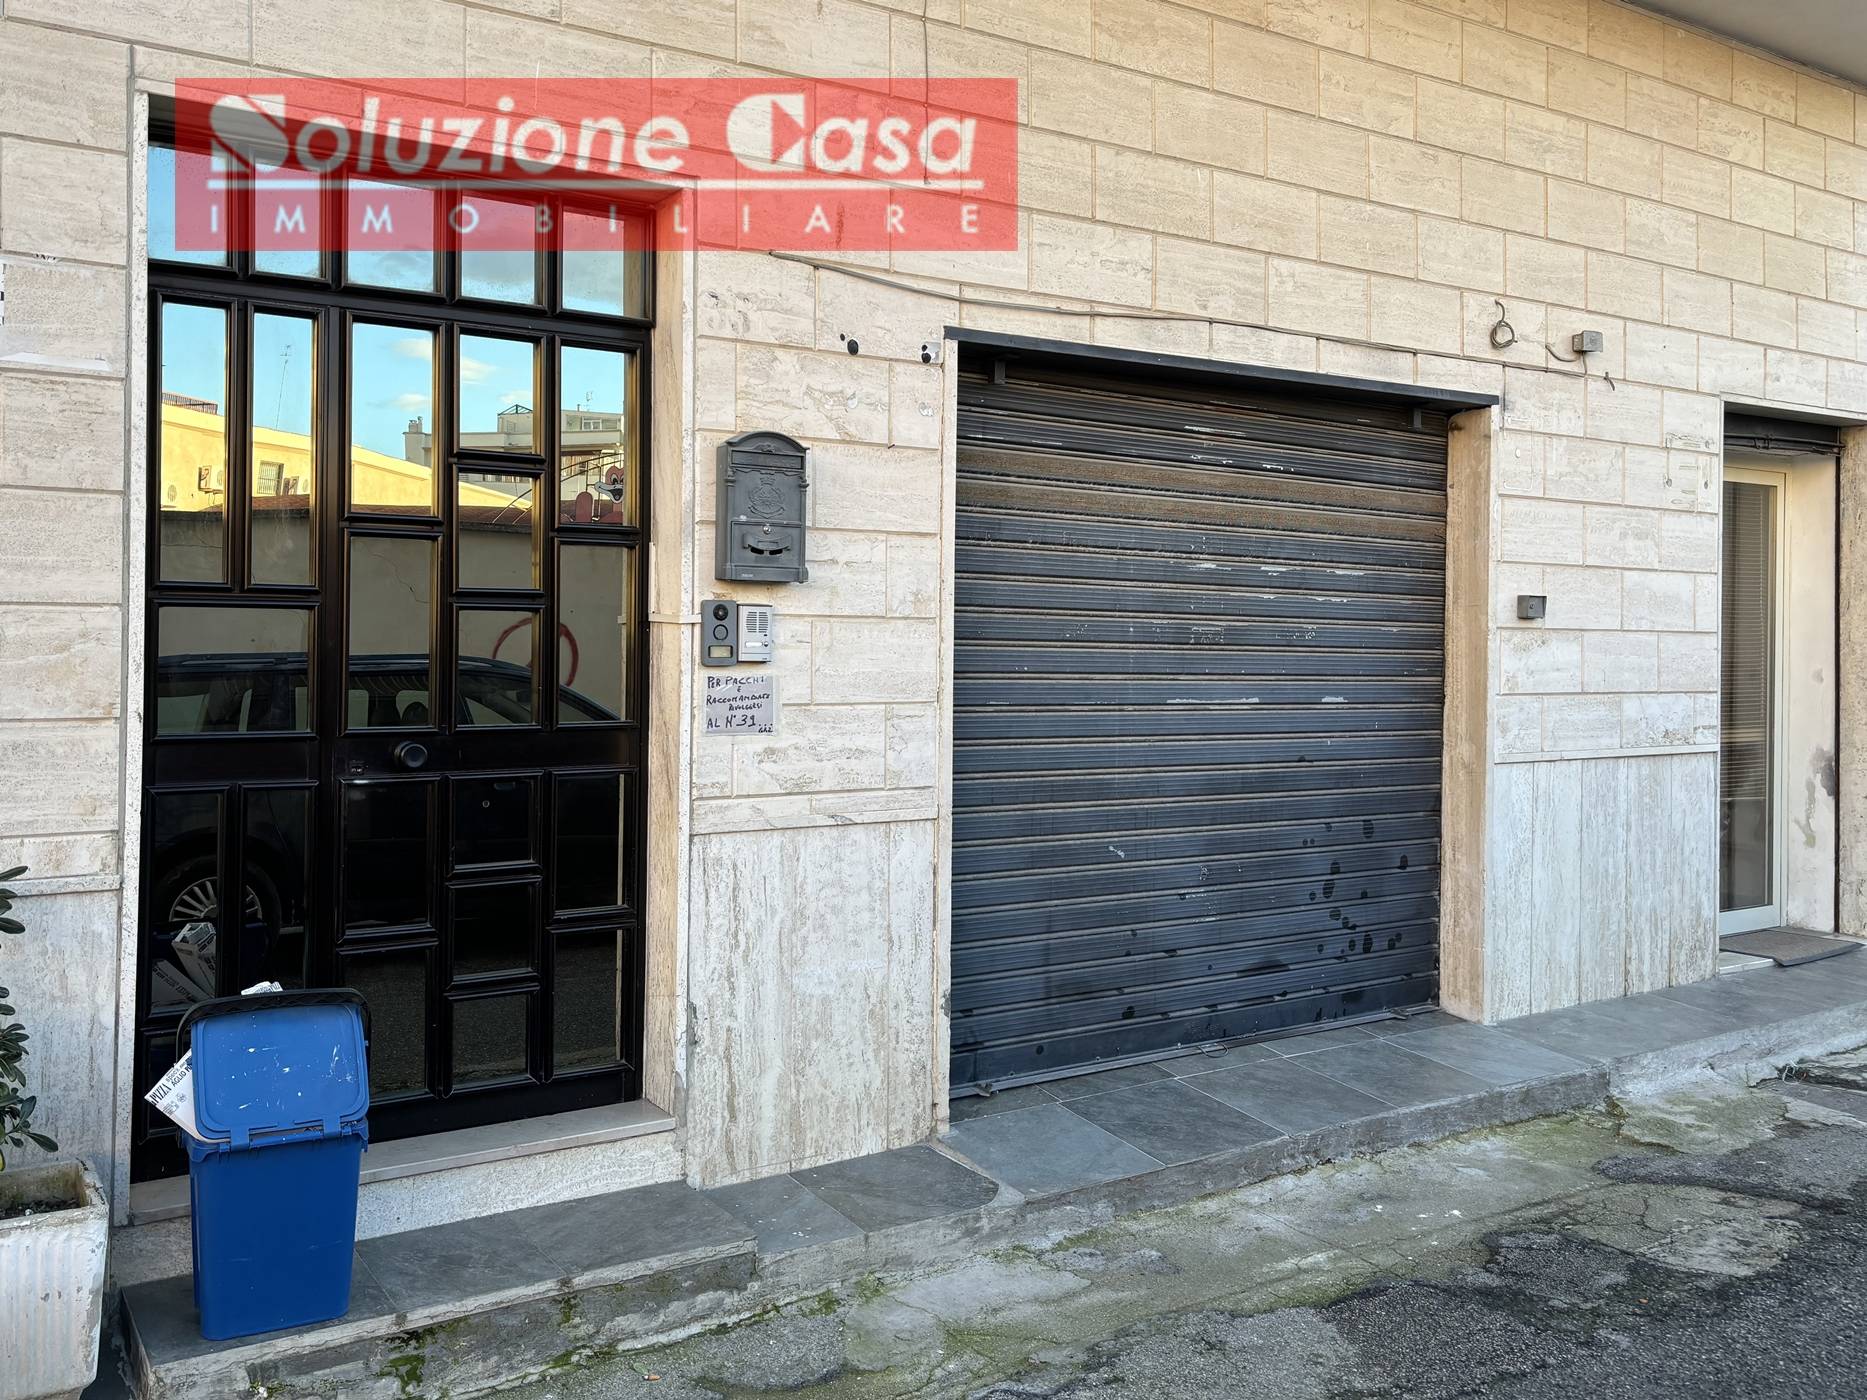 Foto - Garage In Vendita Canosa Di Puglia (bt)